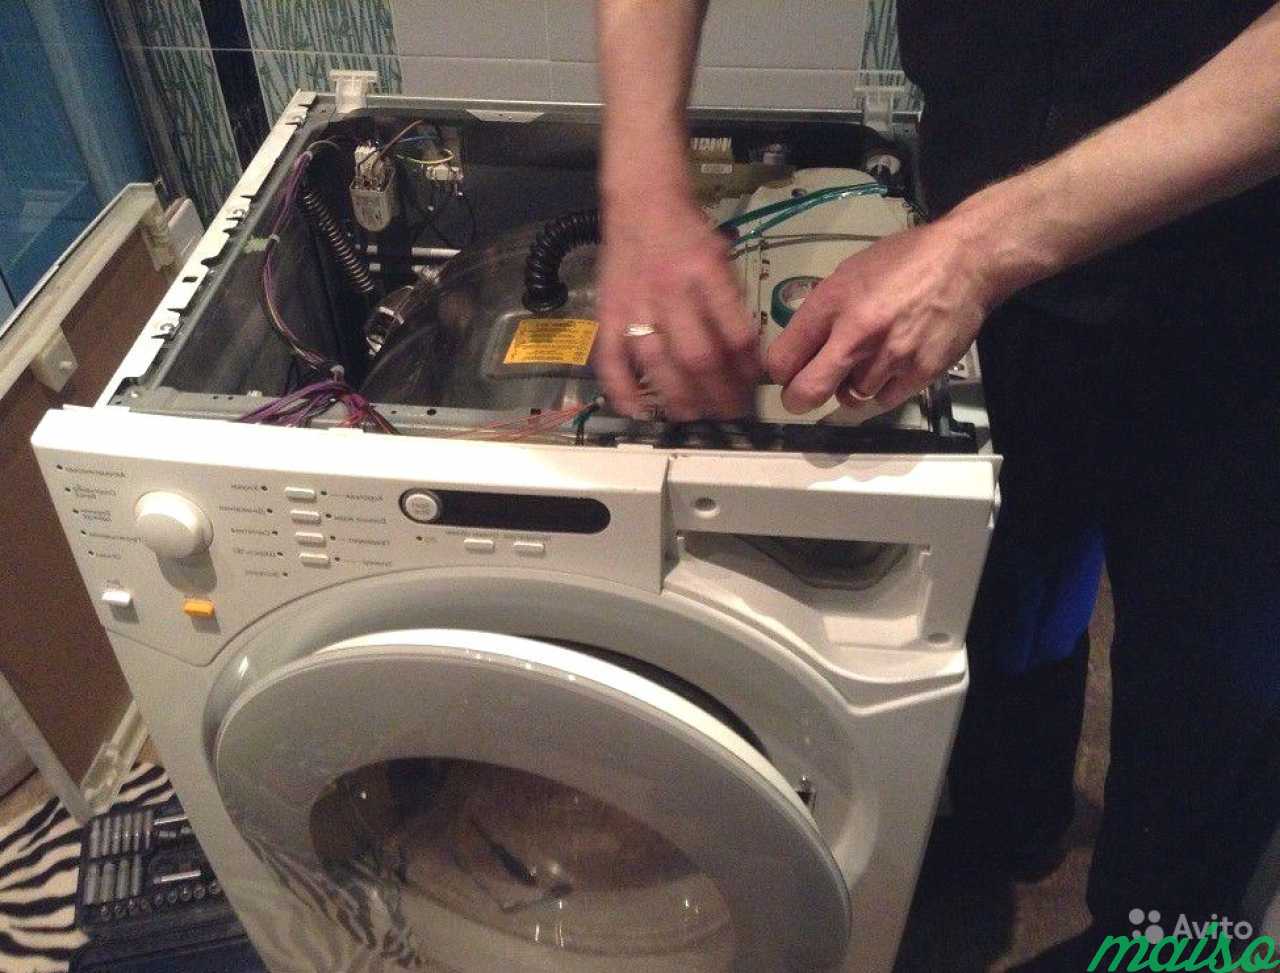 Ремонт com стиральных машин